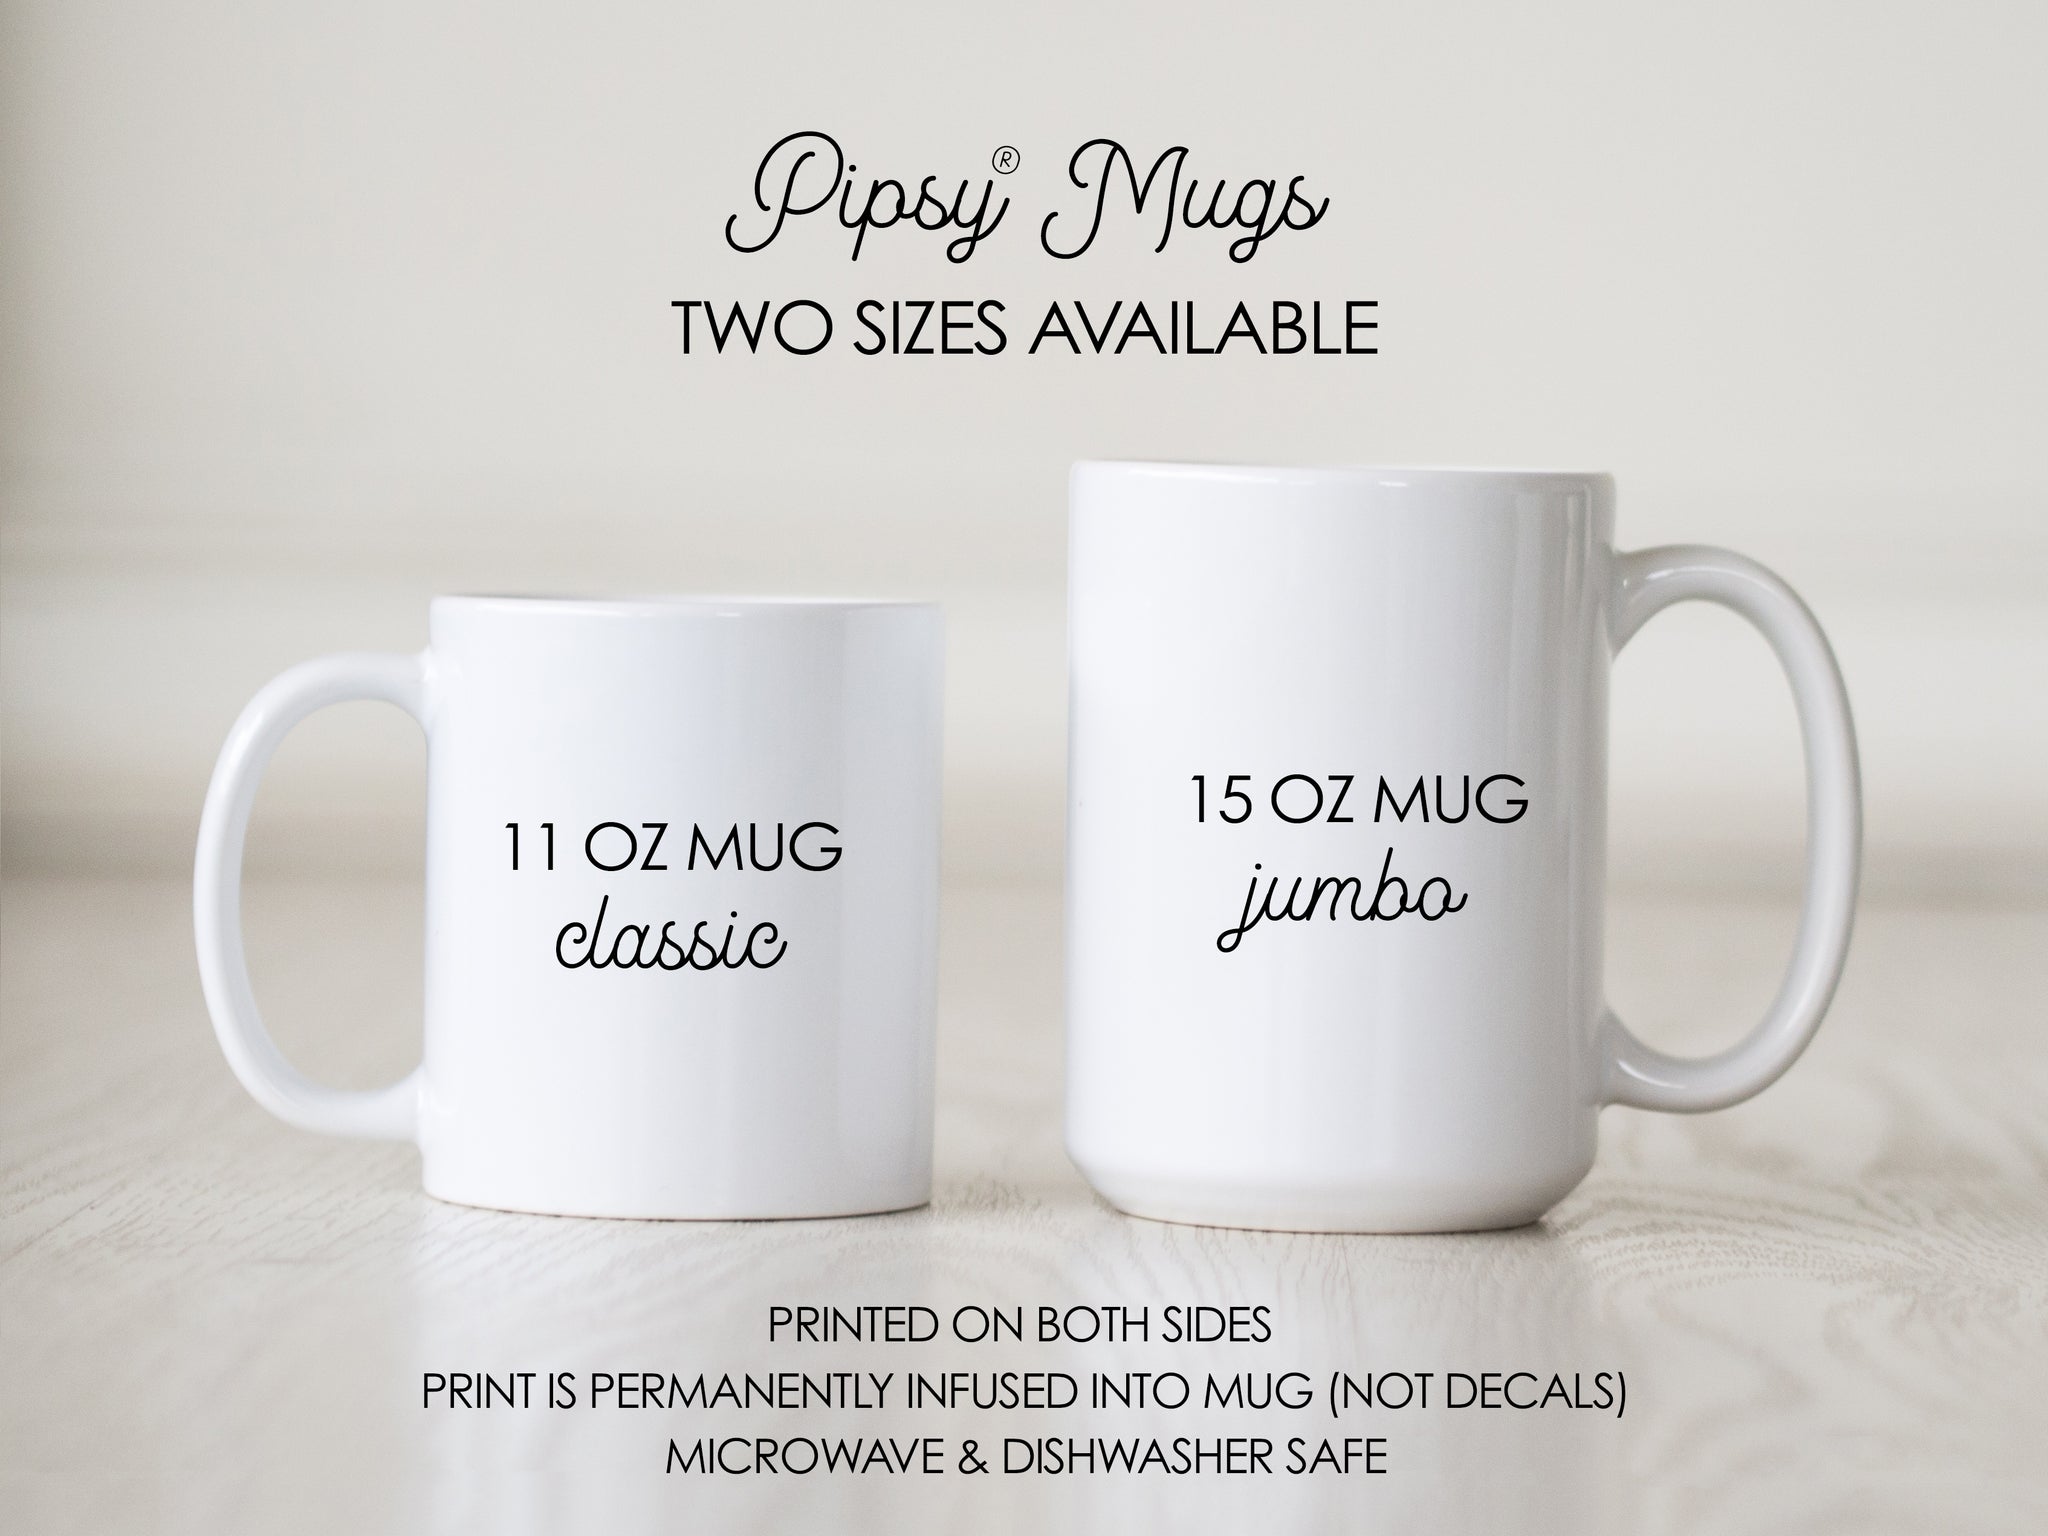 Create Personalized 11oz Magic Photo Coffee Mug